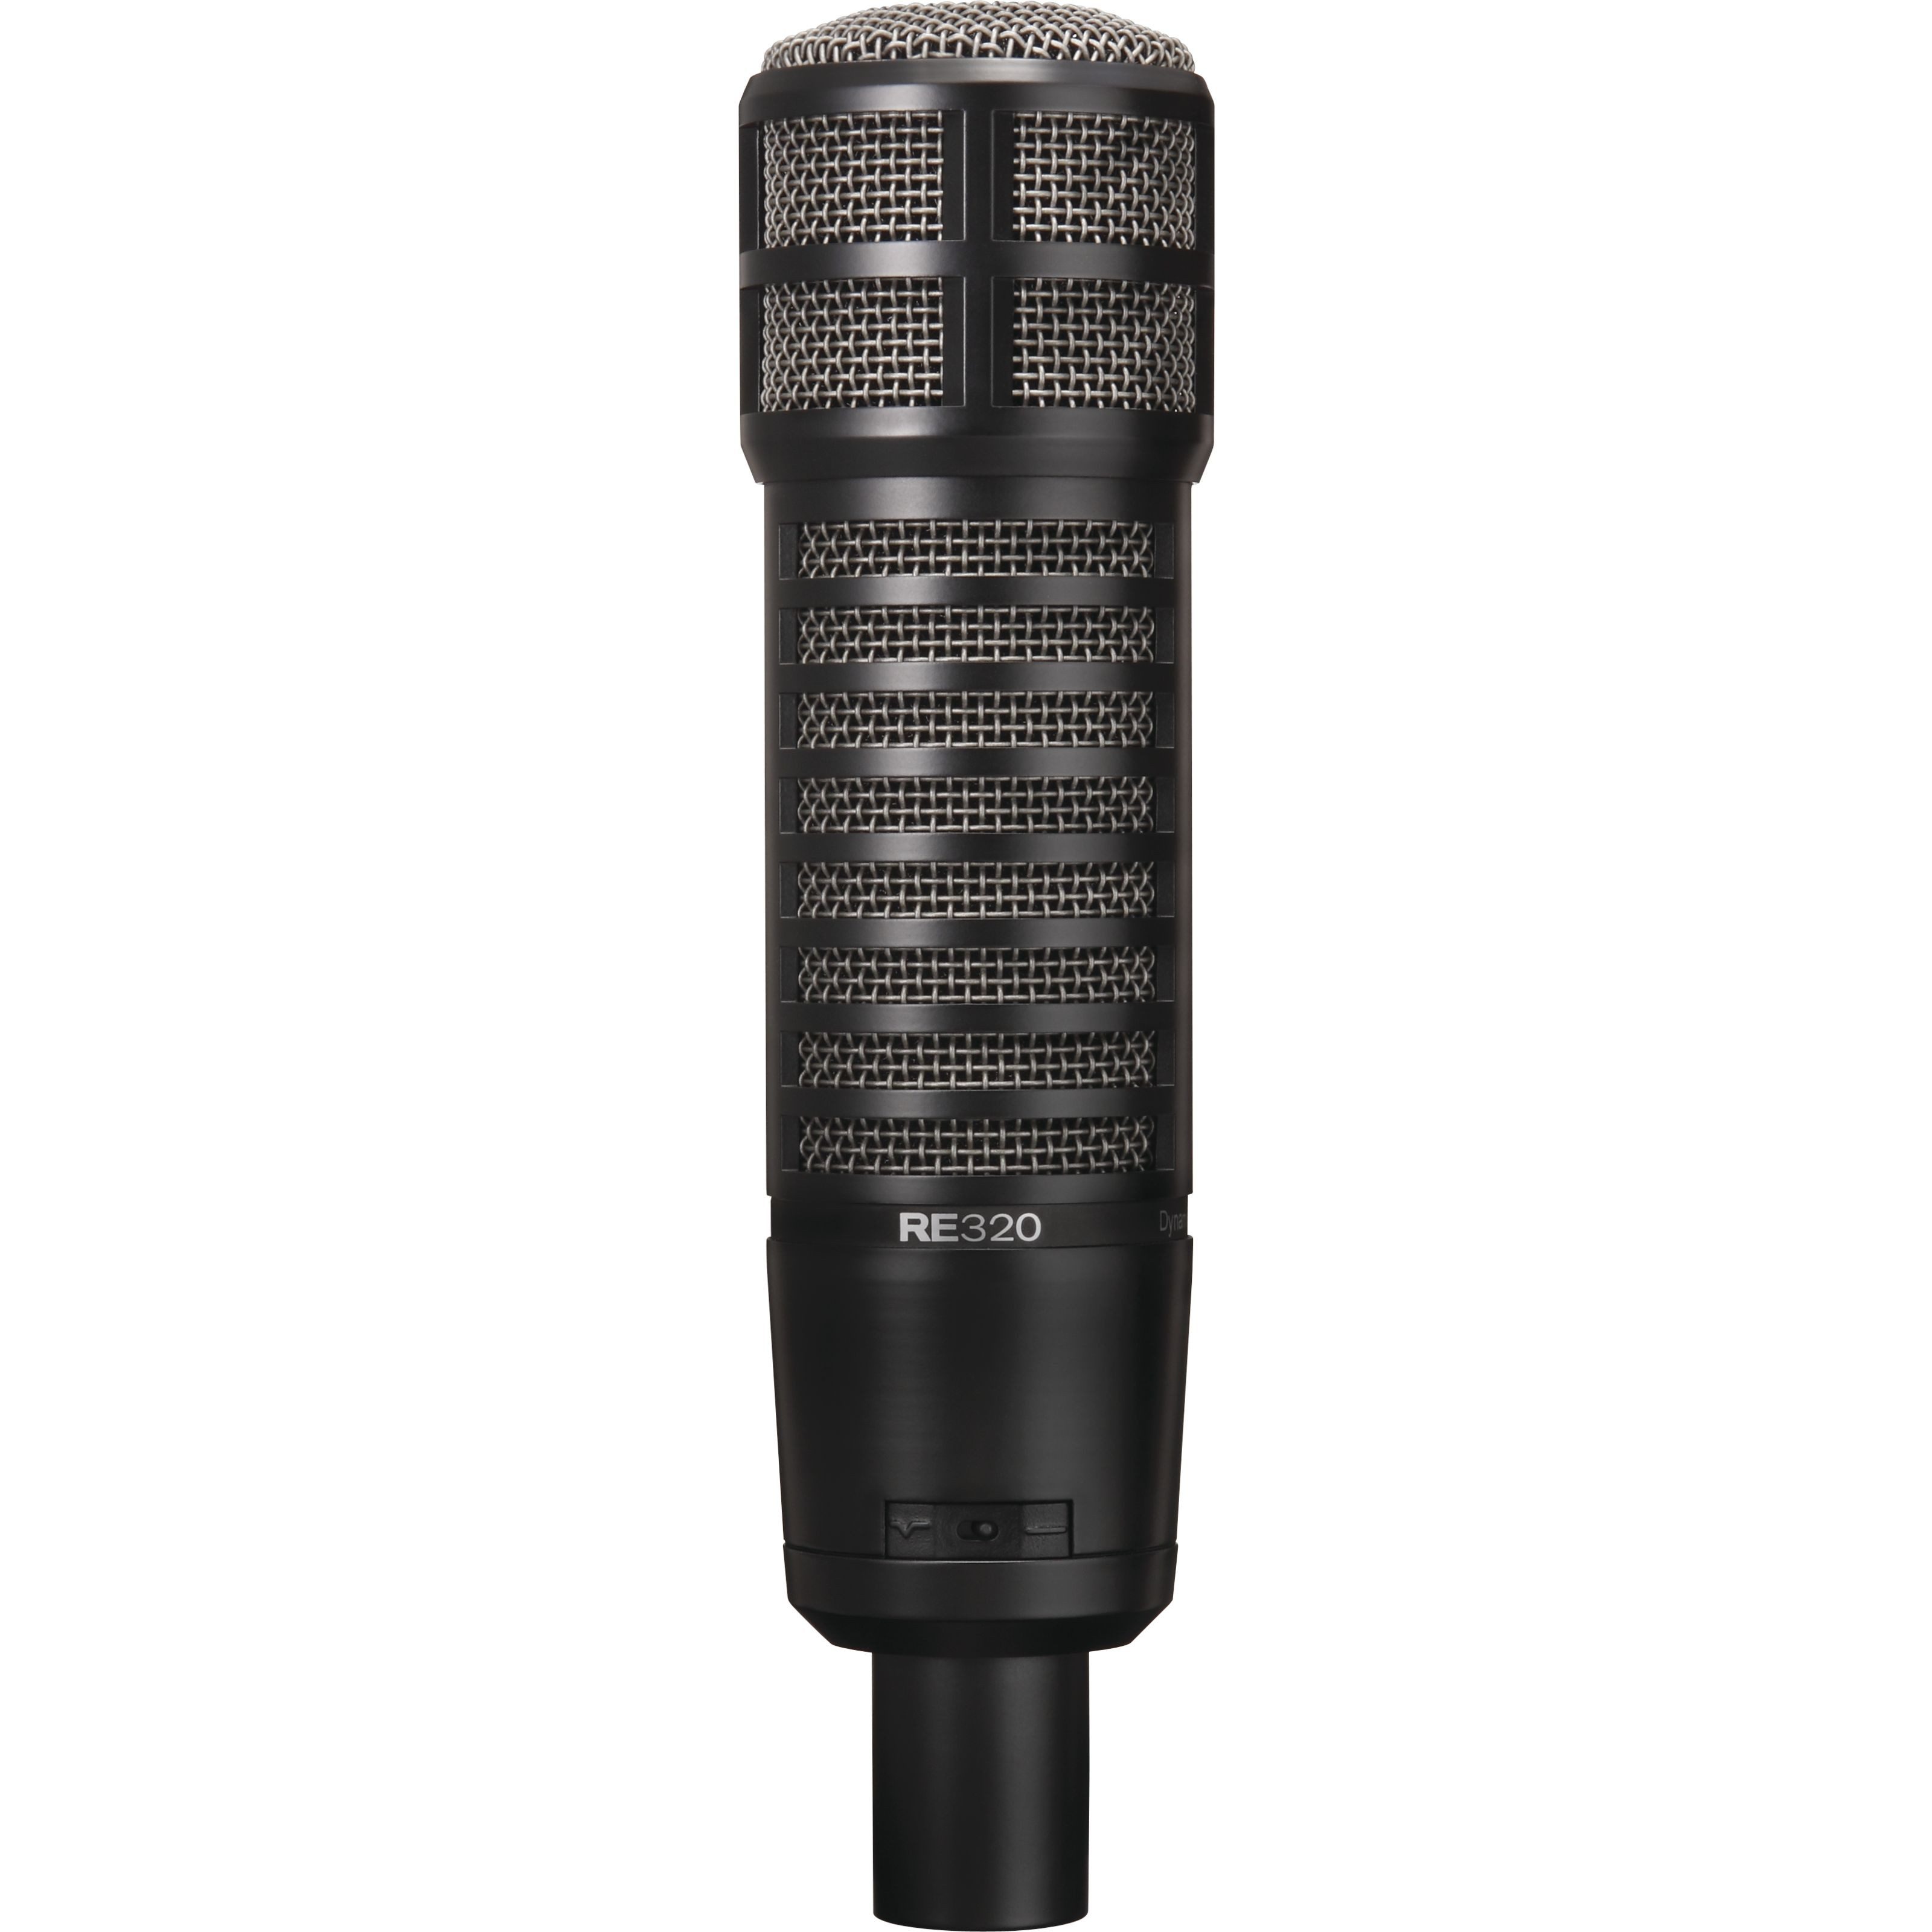 Electro Voice Mikrofon, RE 320 - Dynamische Mikrofon